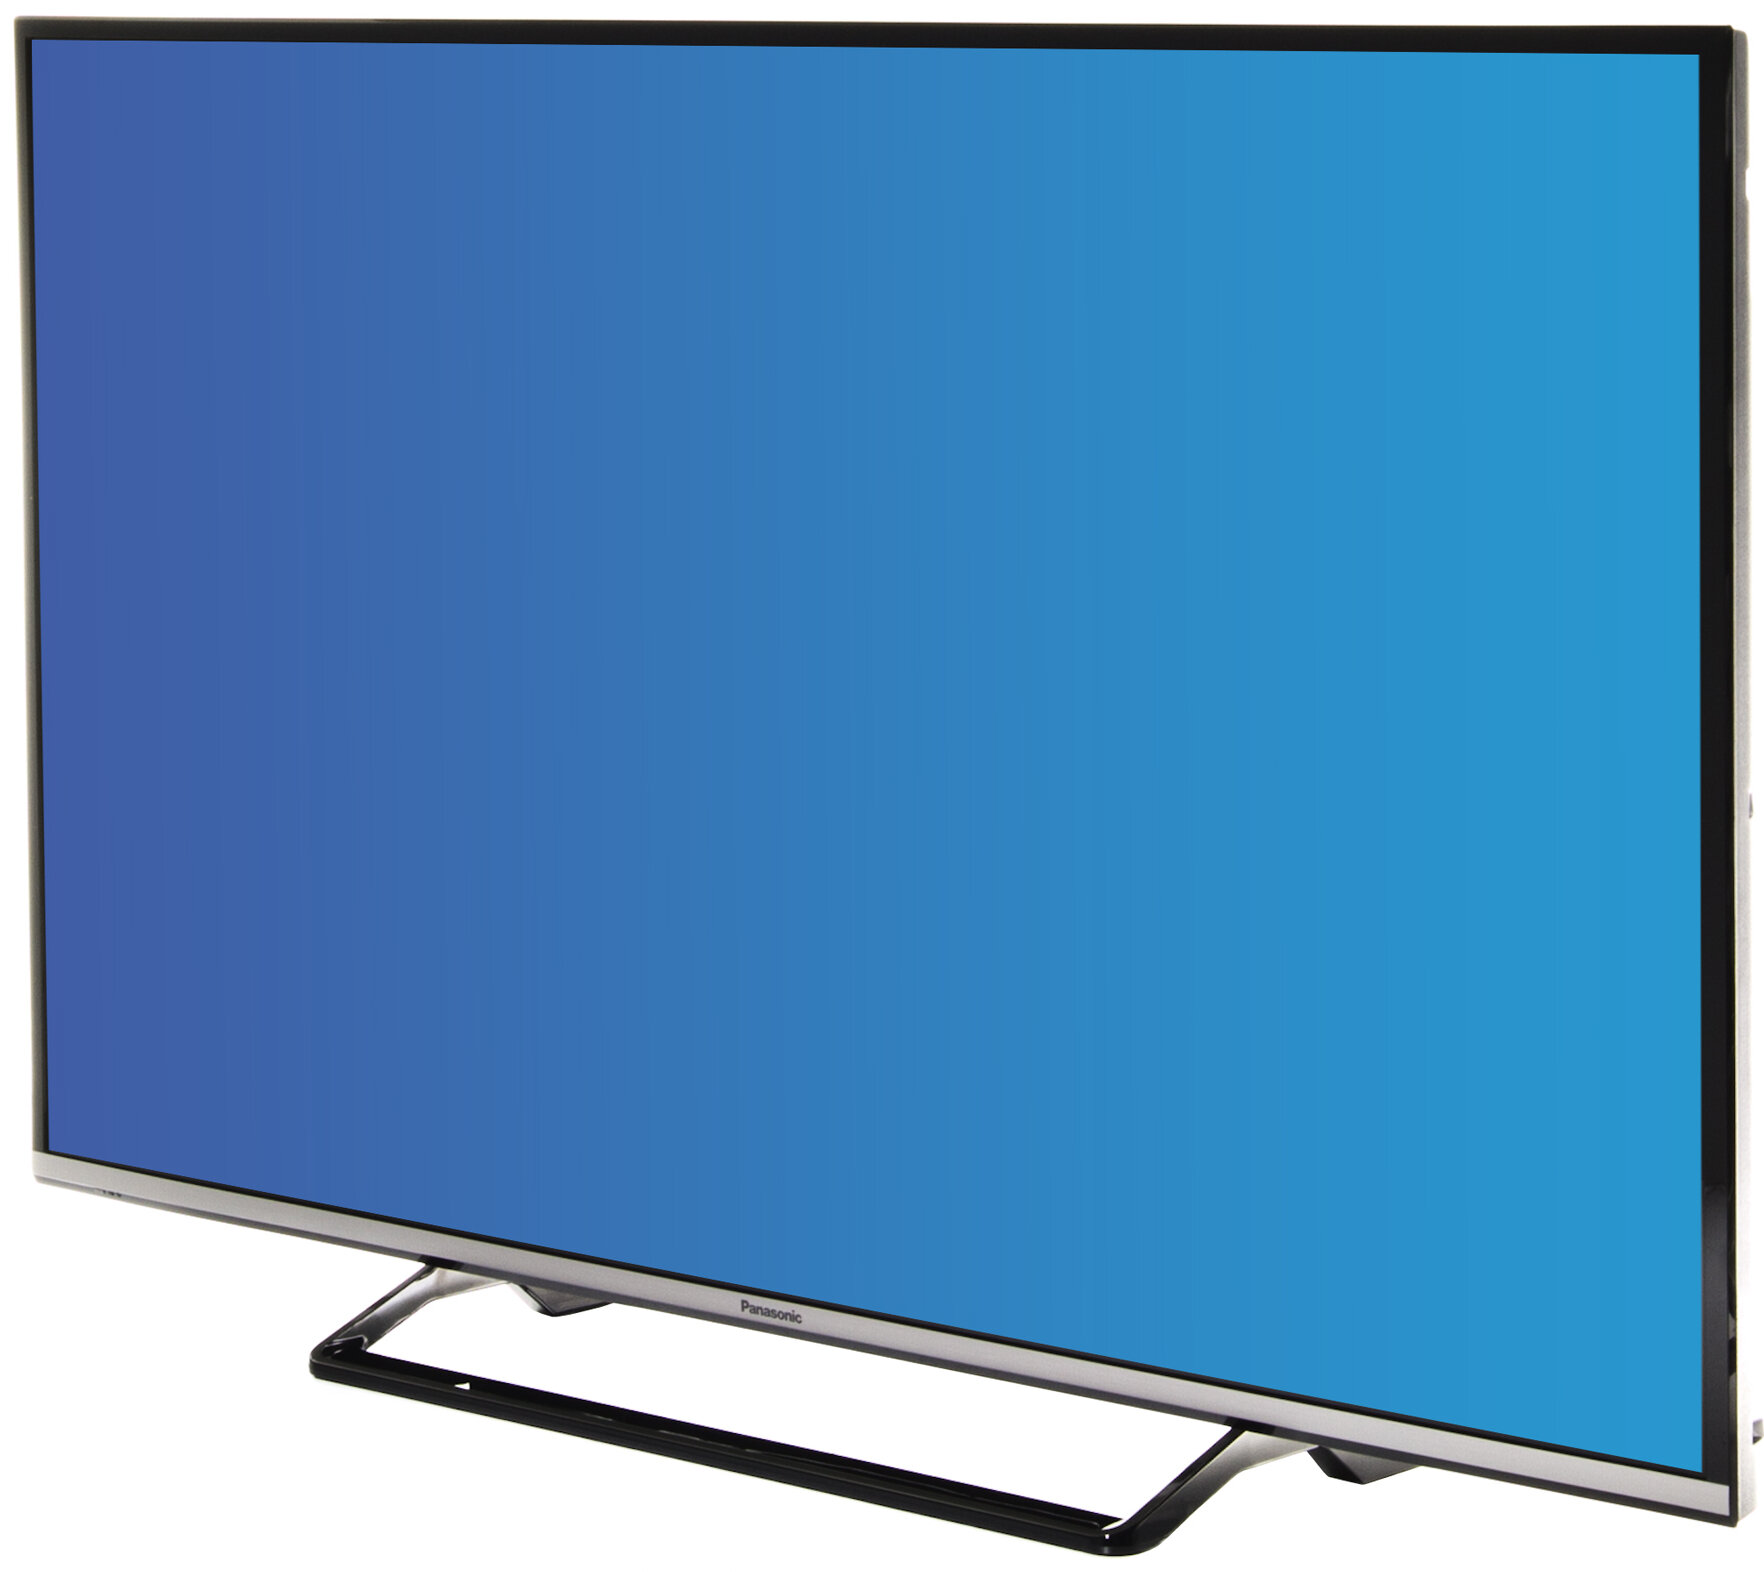 PANASONIC LED TX-49DS500 Telewizor - niskie ceny i opinie w Media Expert